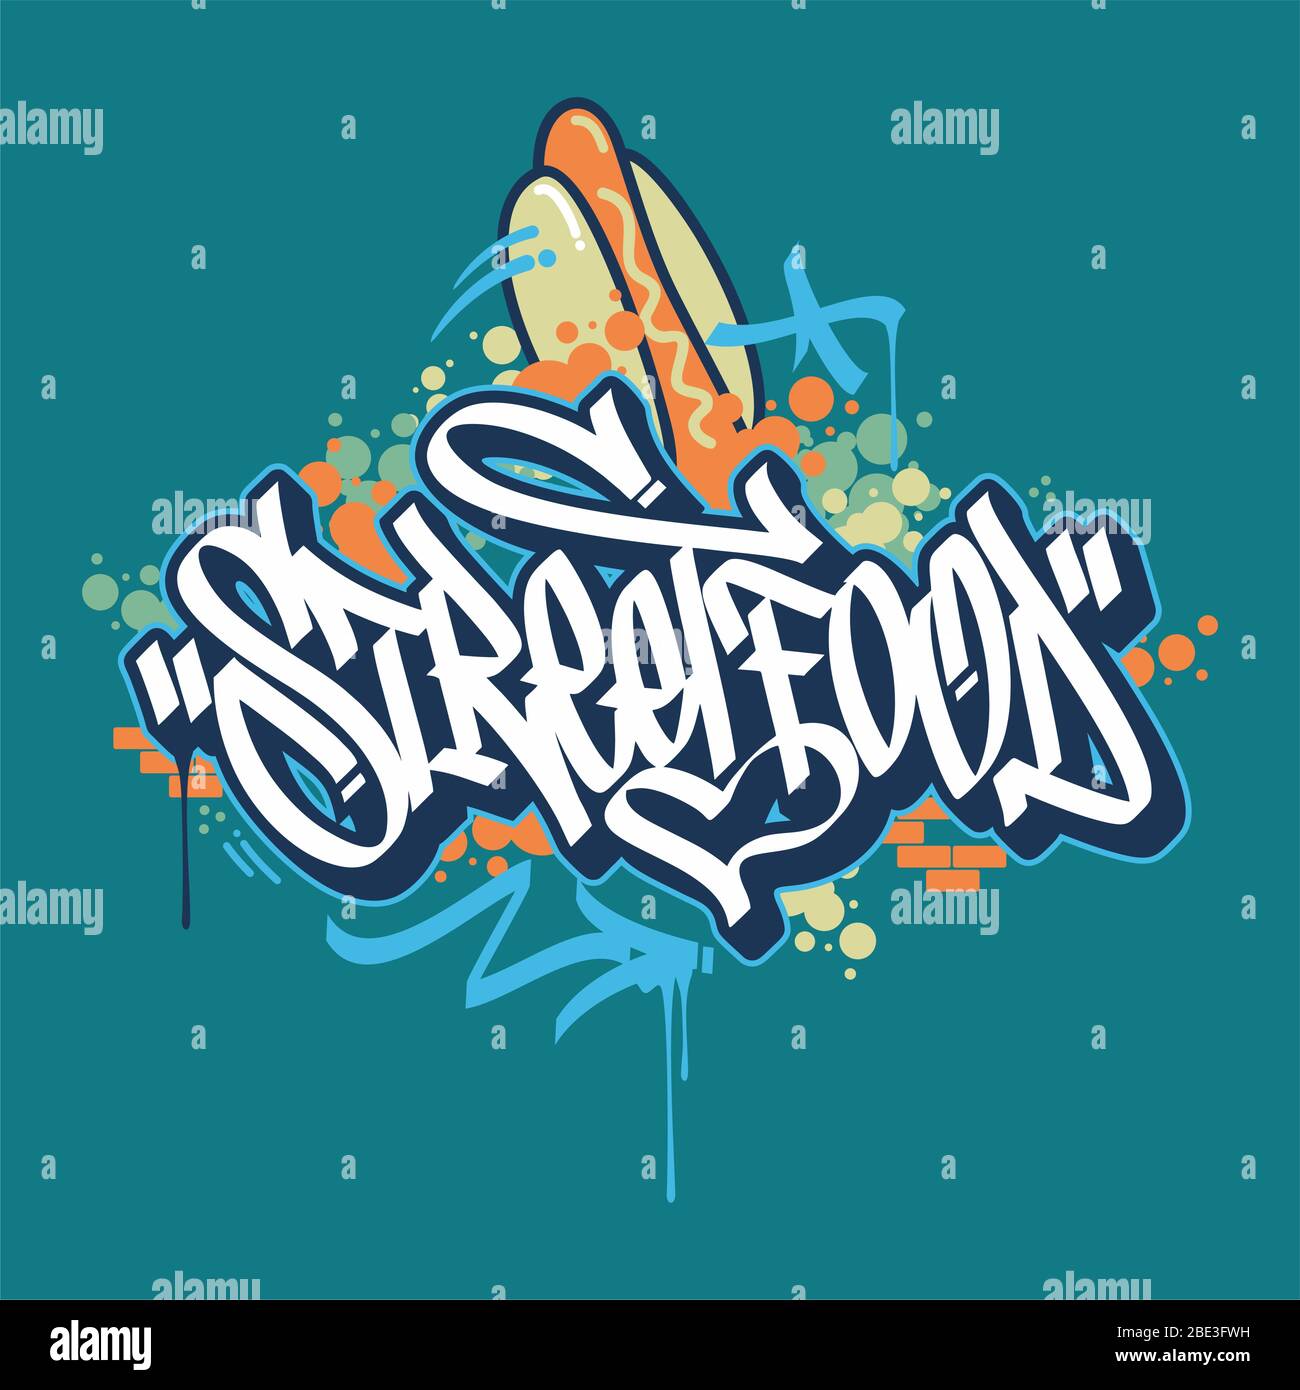 Abstrakt Hand skizziert Graffiti Style Street Food Vektor Typografie  Illustration als Logo, Abzeichen und Ikone, Postkarte, Karte, Einladung,  Flyer Stock-Vektorgrafik - Alamy